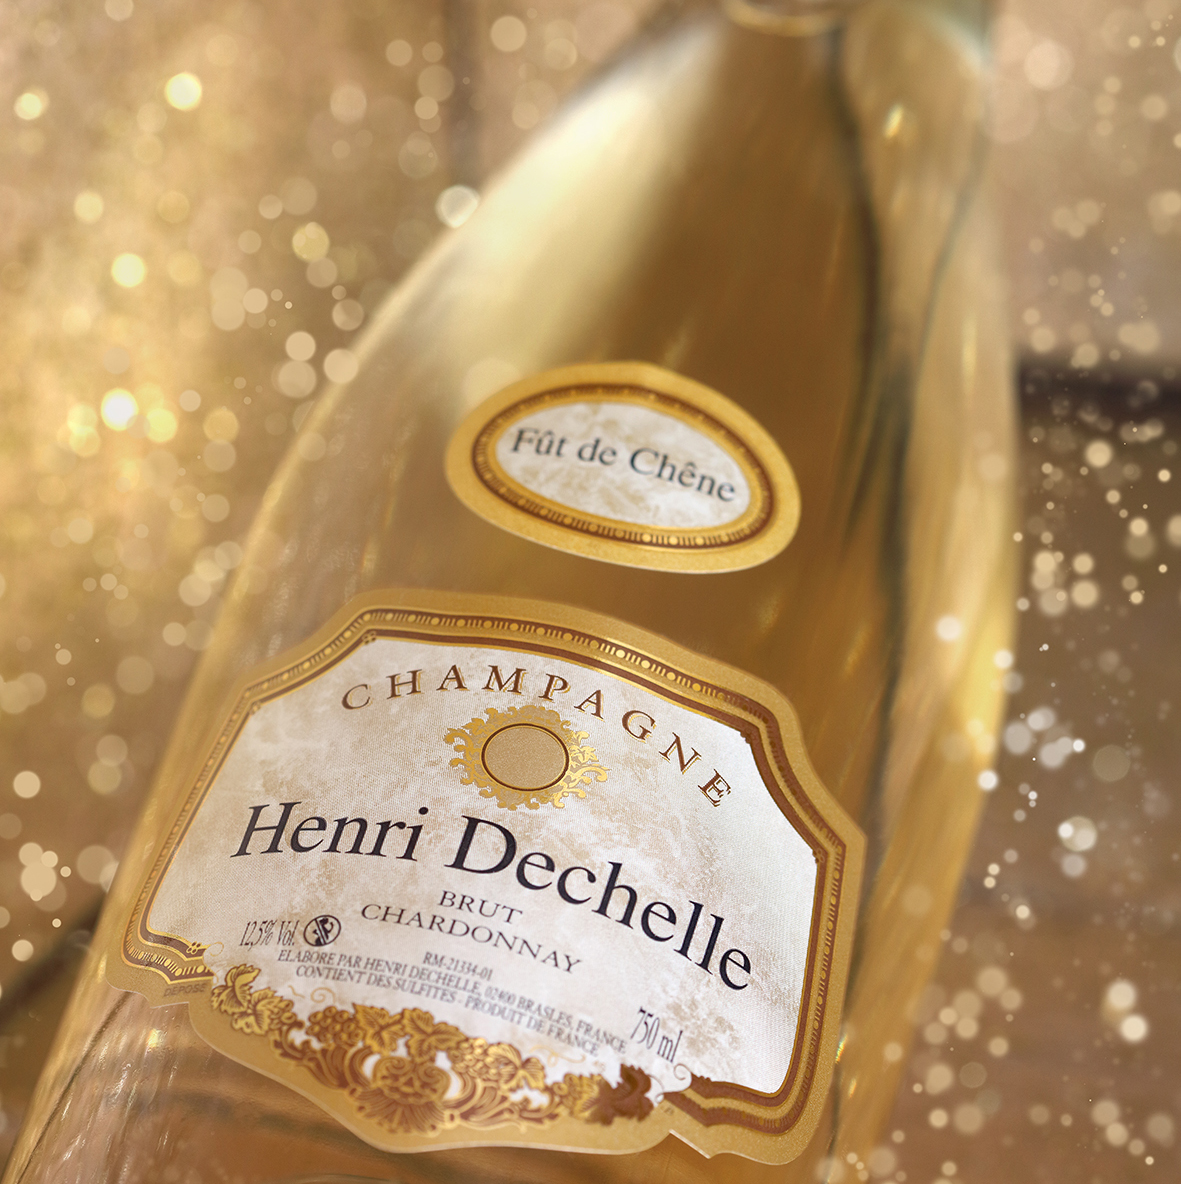 Champagne Henri Dechelle et Fille